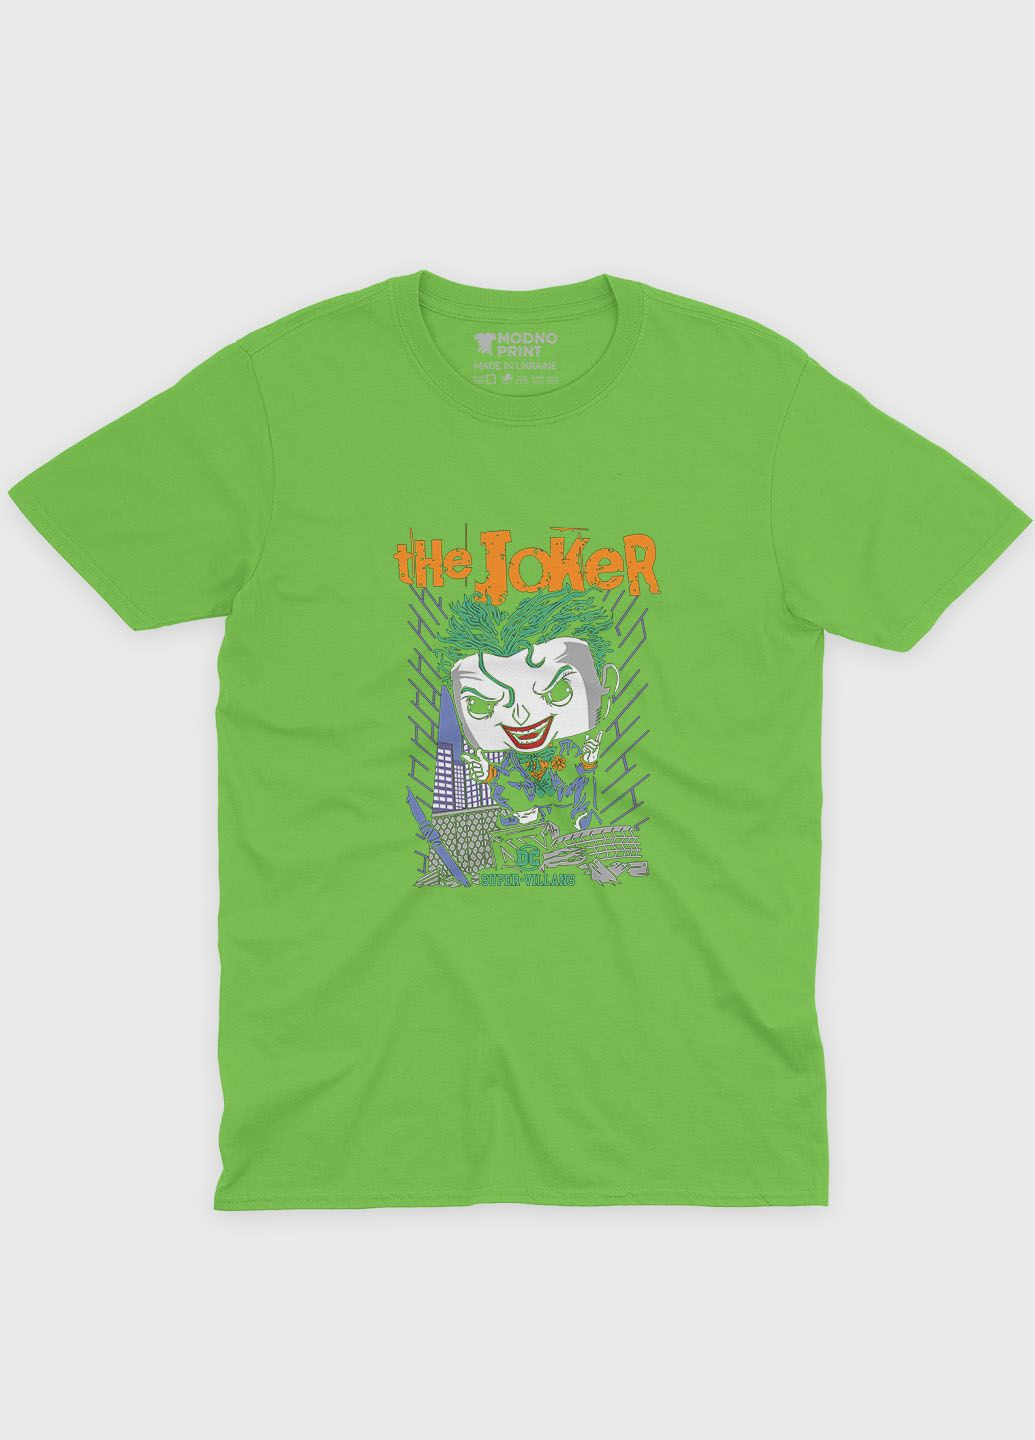 Салатовая демисезонная футболка для мальчика с принтом супервора - джокер (ts001-1-kiw-006-005-006-b) Modno